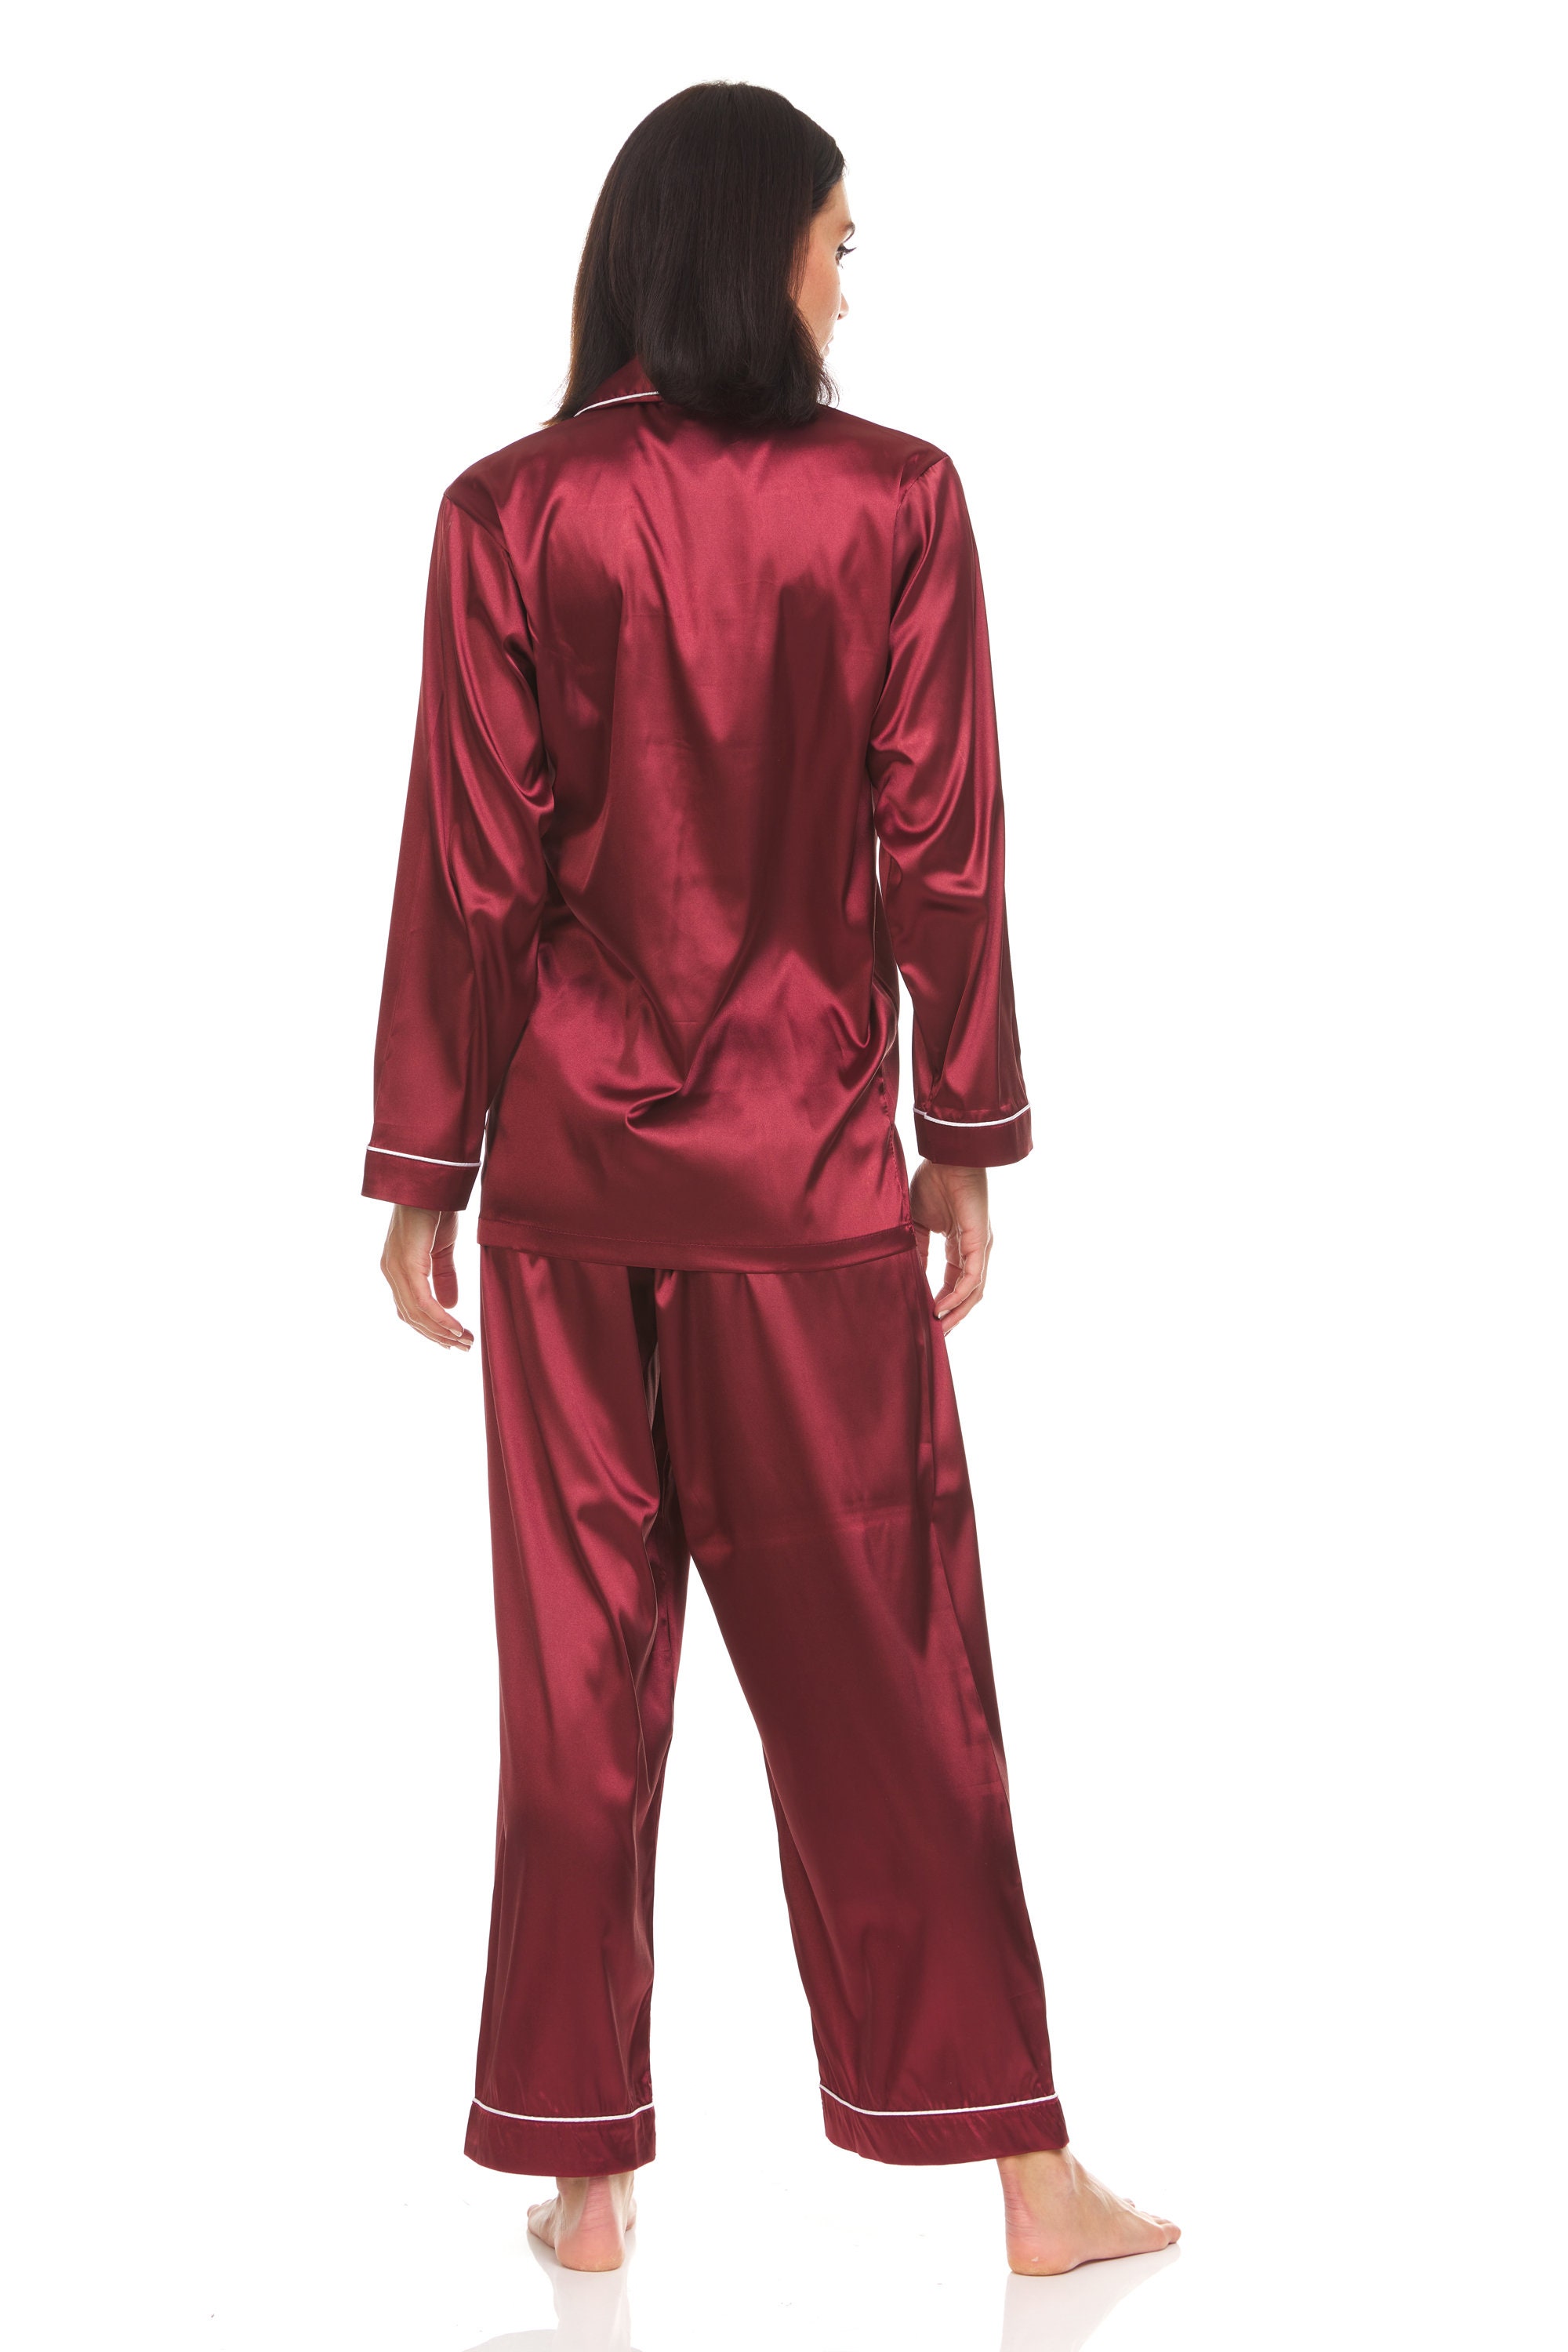 Womens Silk Satin Pajamas PJ Set Top and Bottom Burgundy | Etsy